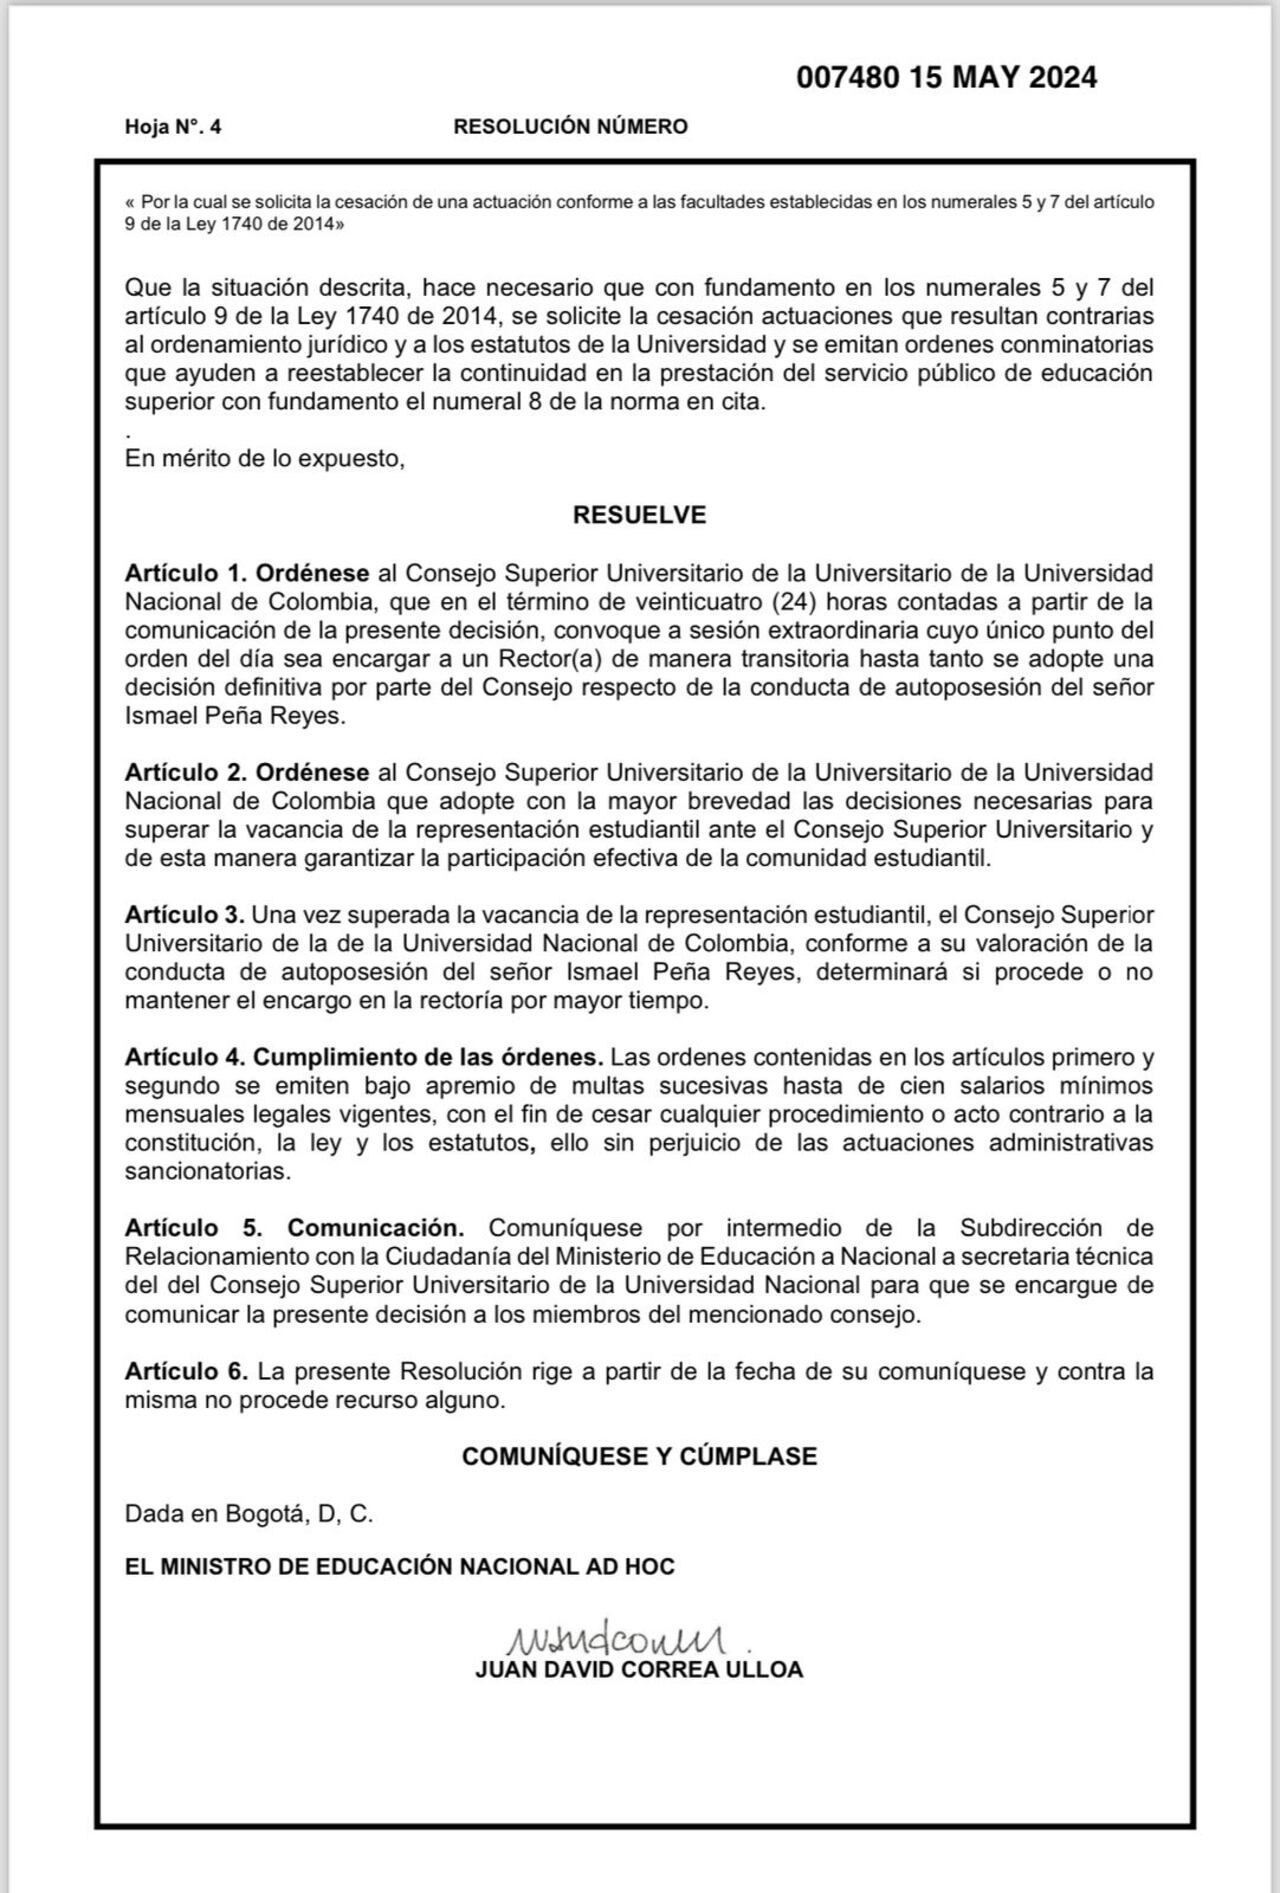 Esta es la resolución firmada por el ministro ad hoc, Juan David Correa.